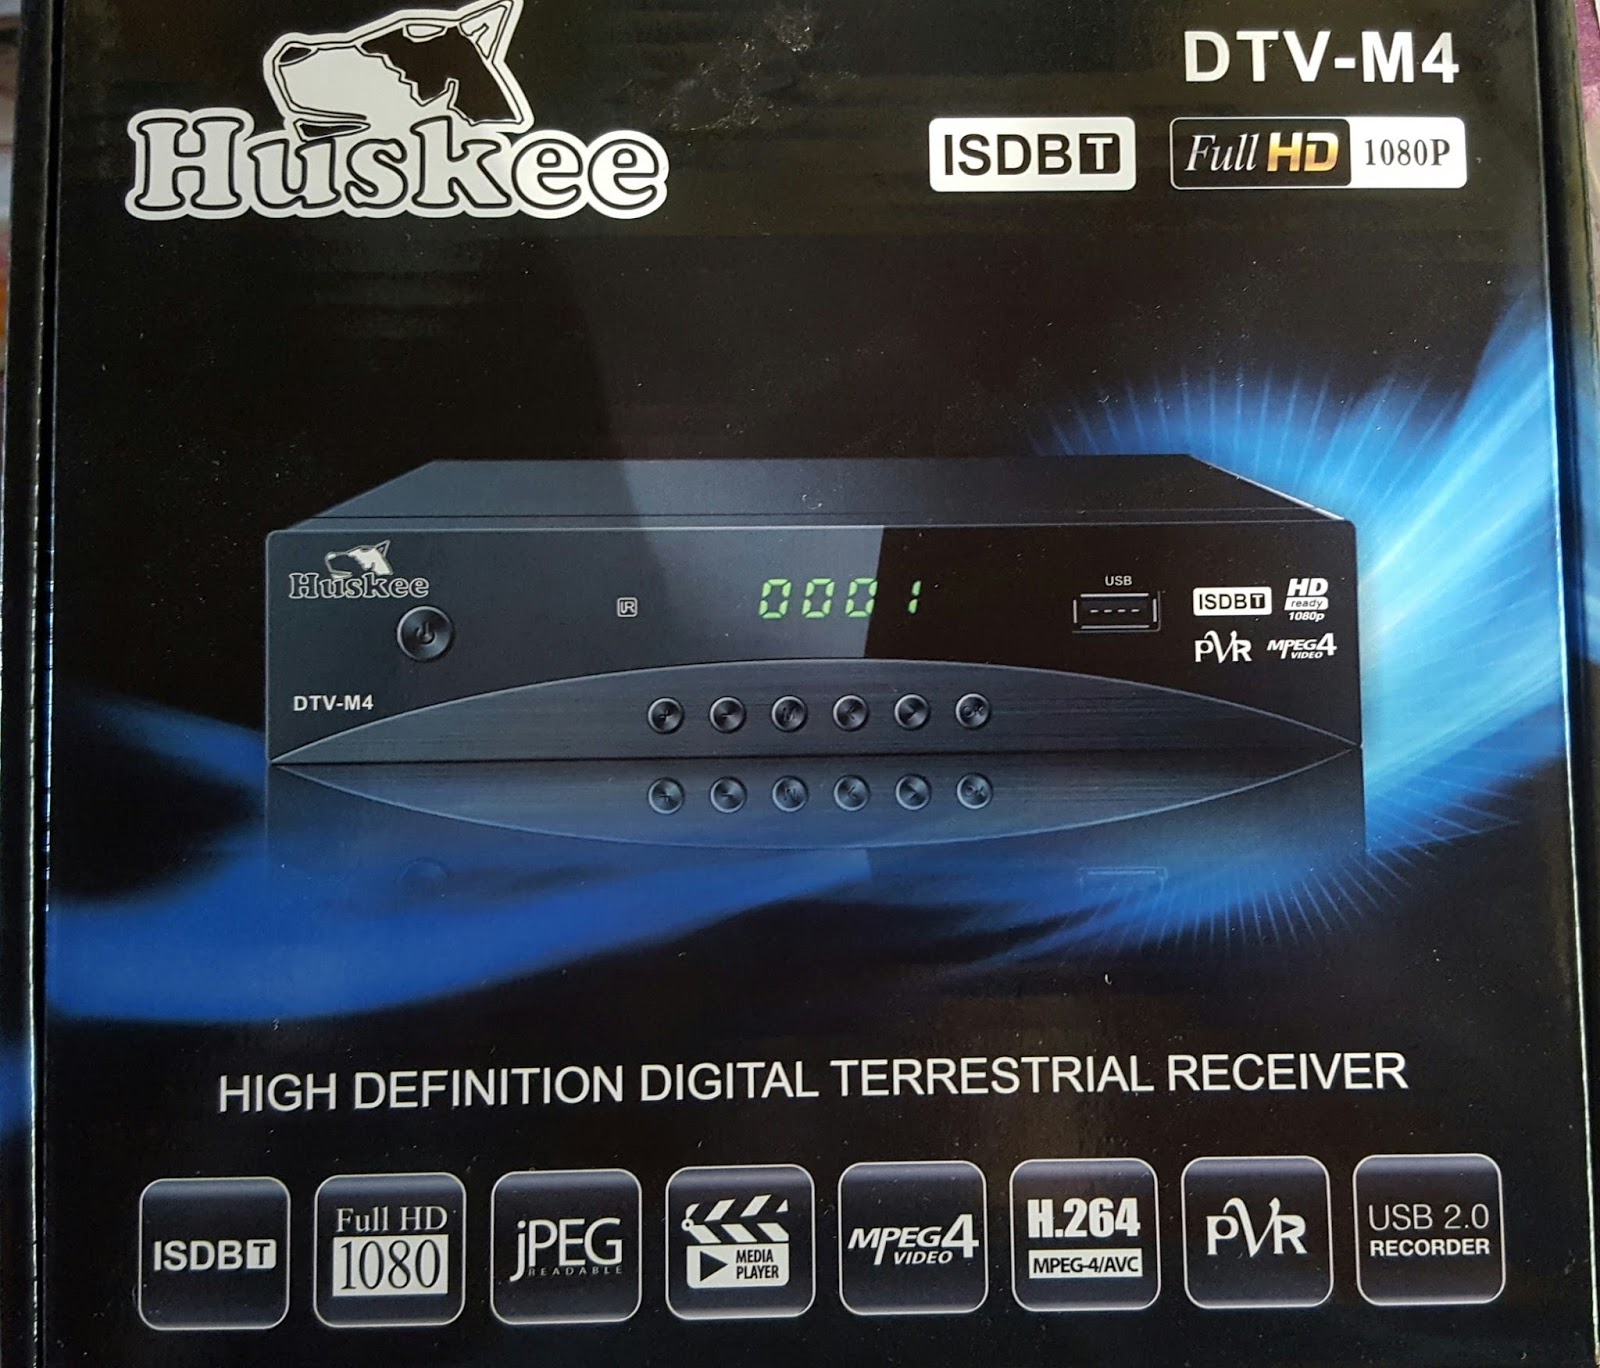 TDT Sintonizador Decodificador Tv Digital Hd 1080p Tdt Isdbt - El Compras